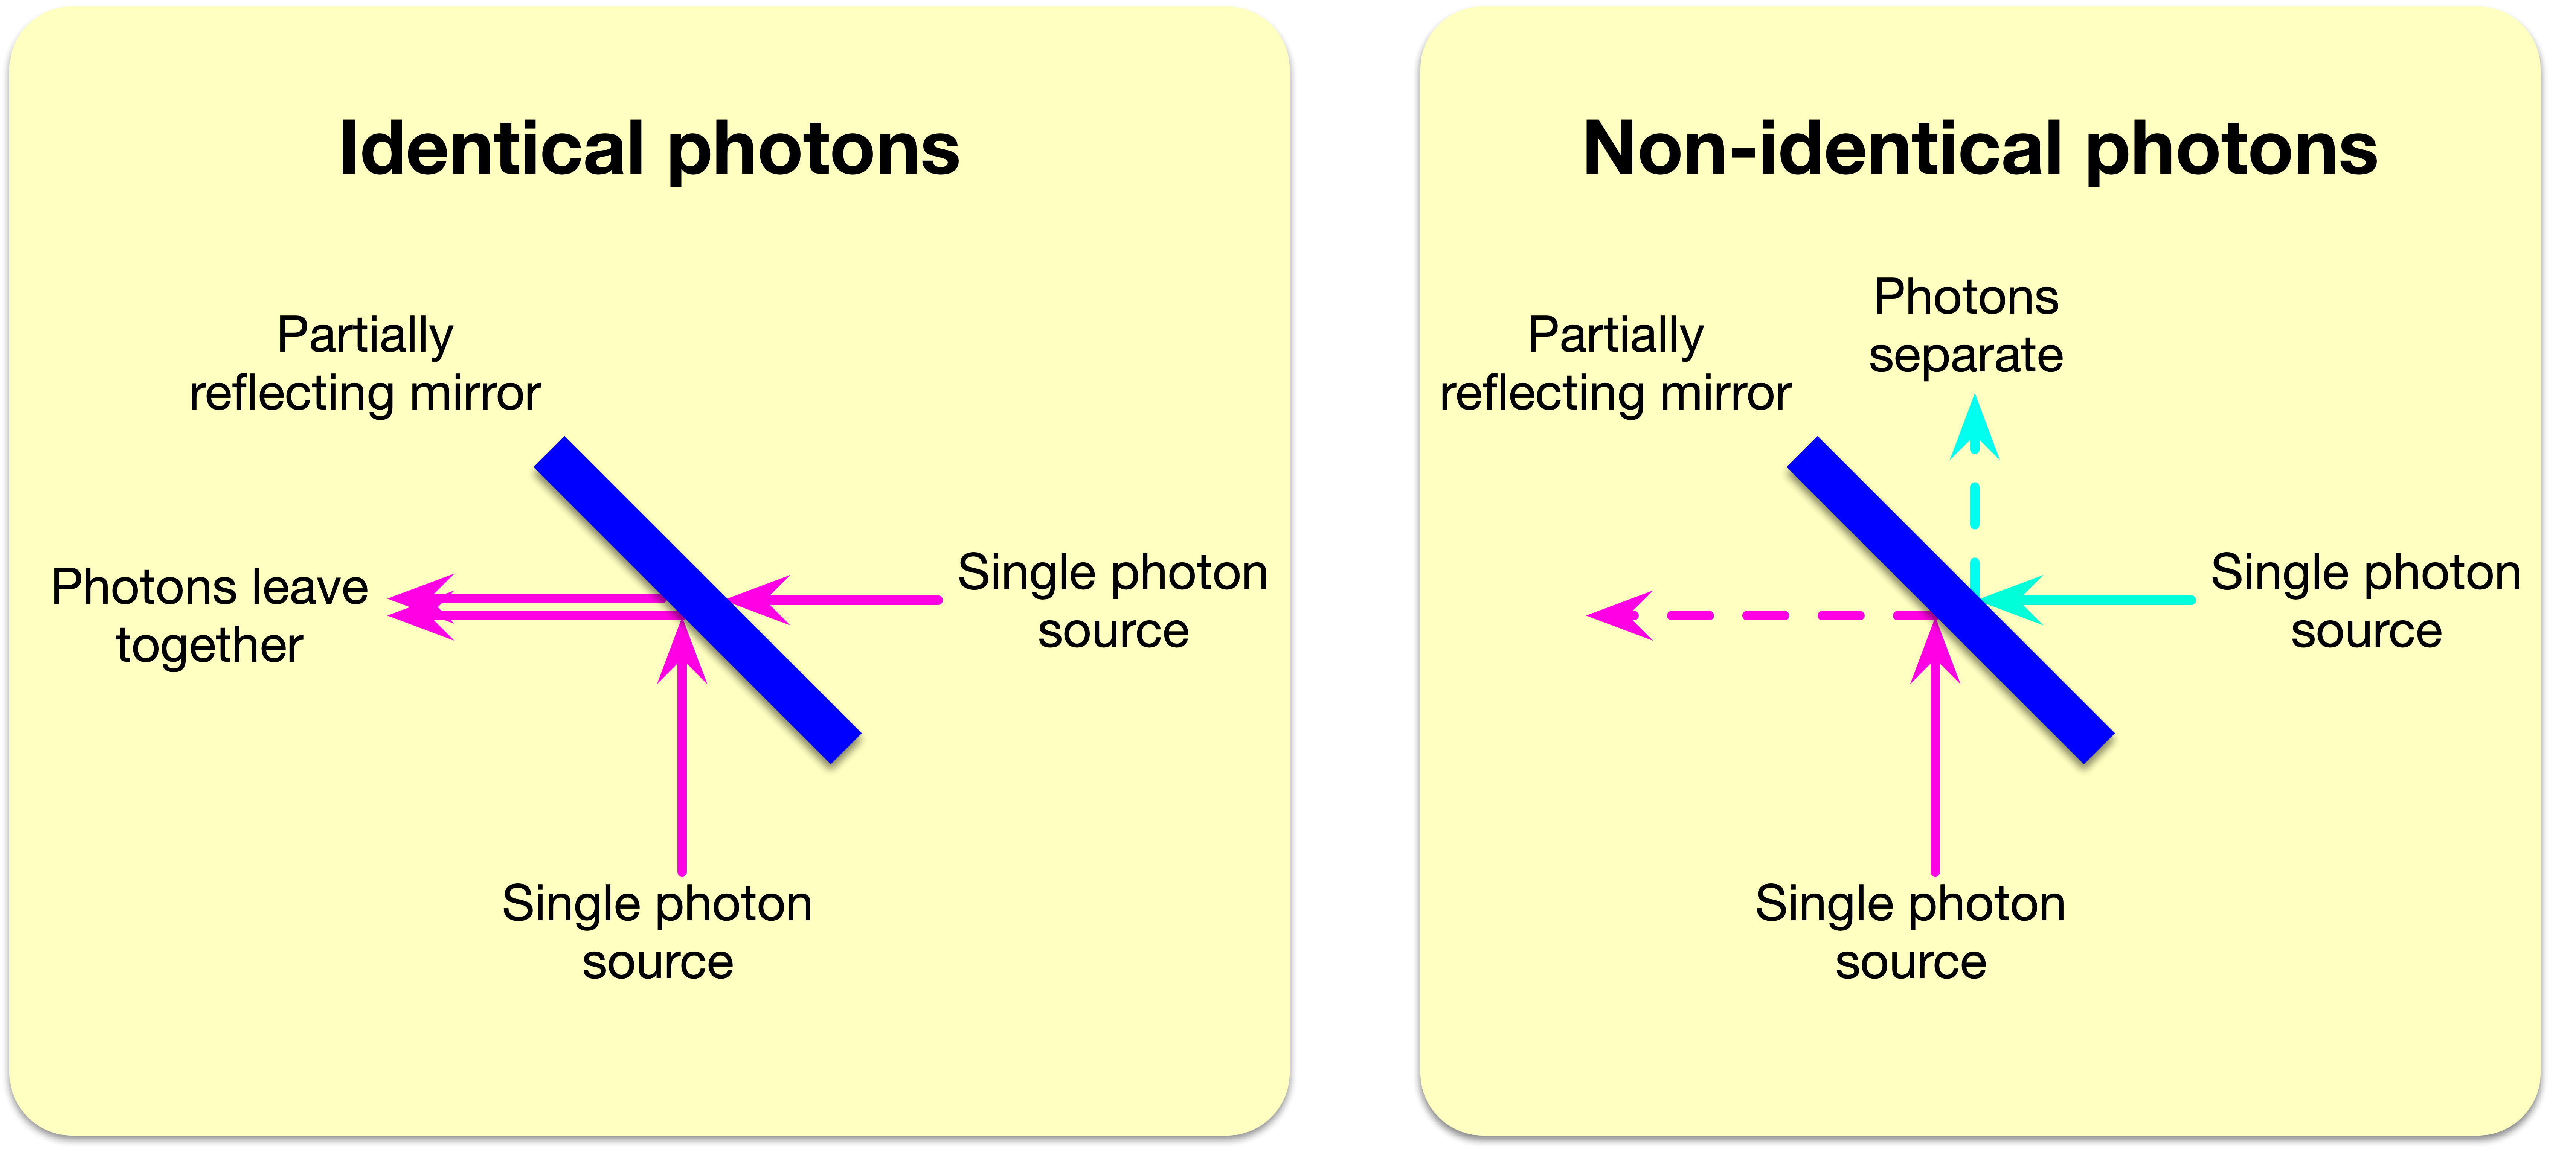 科学网—[打听] “单光子”遇上“半反半透镜”：观察到什么现象？ - 杨正瓴的博文